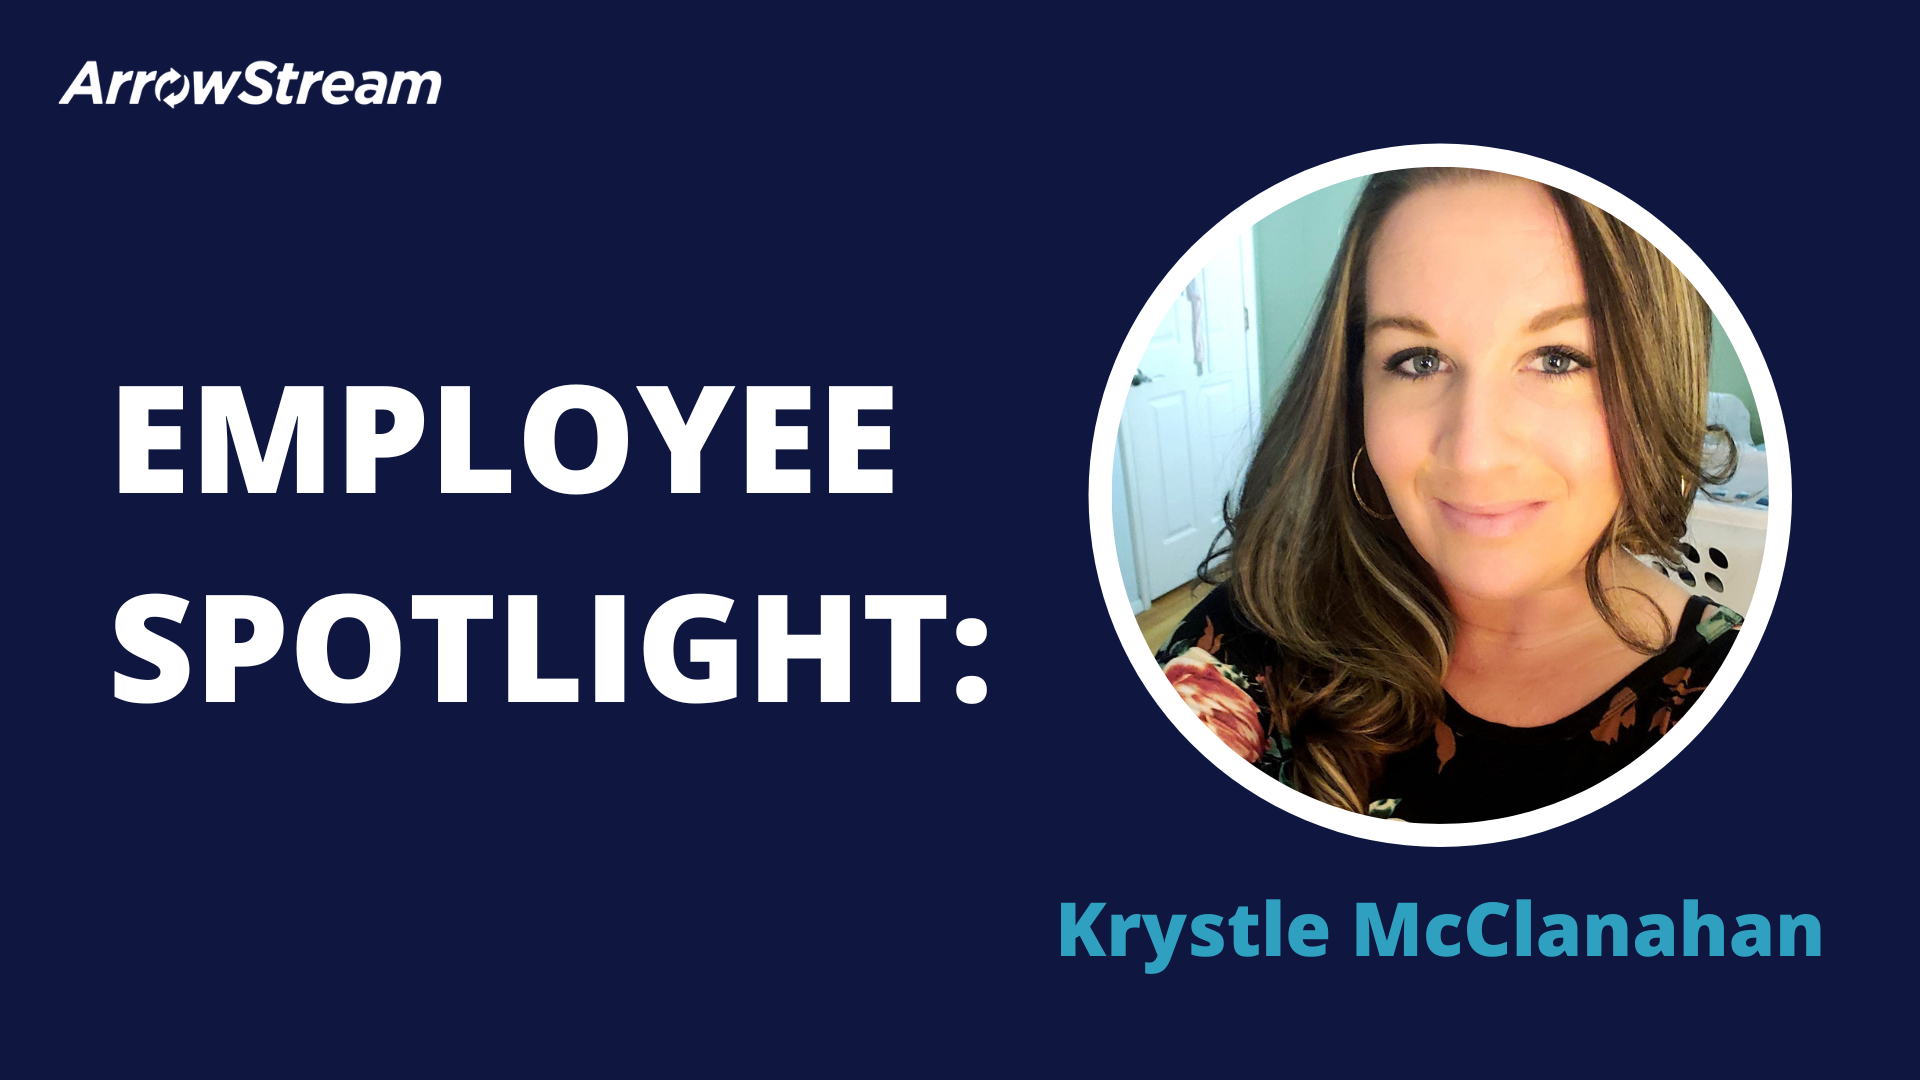 Employee Spotlight - Krystle McClanahan - ArrowStream